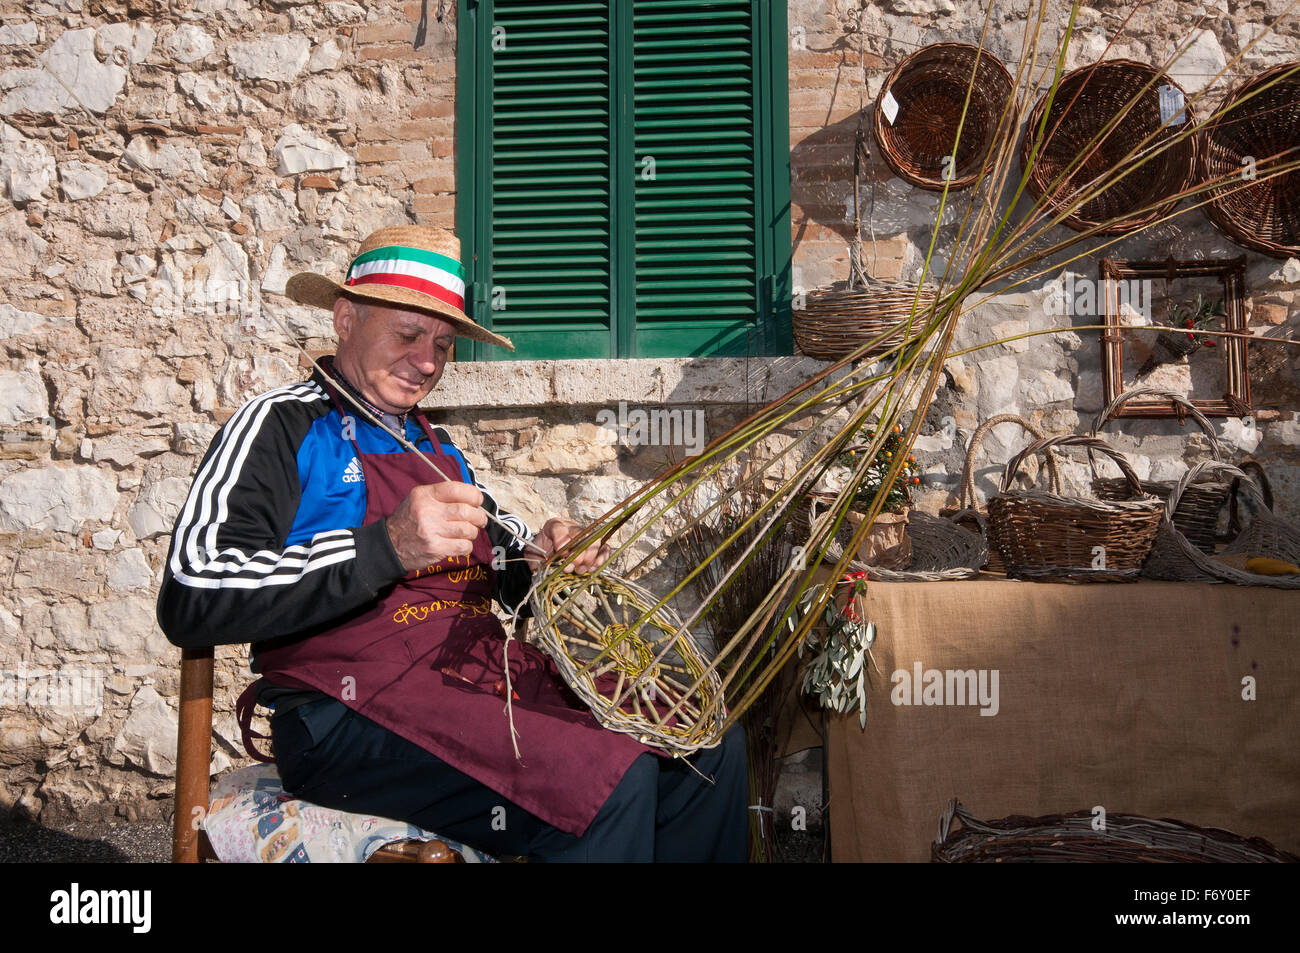 Artigiano al lavoro con il vimini a Montecchio, Terni, Umbria, Italia Foto Stock